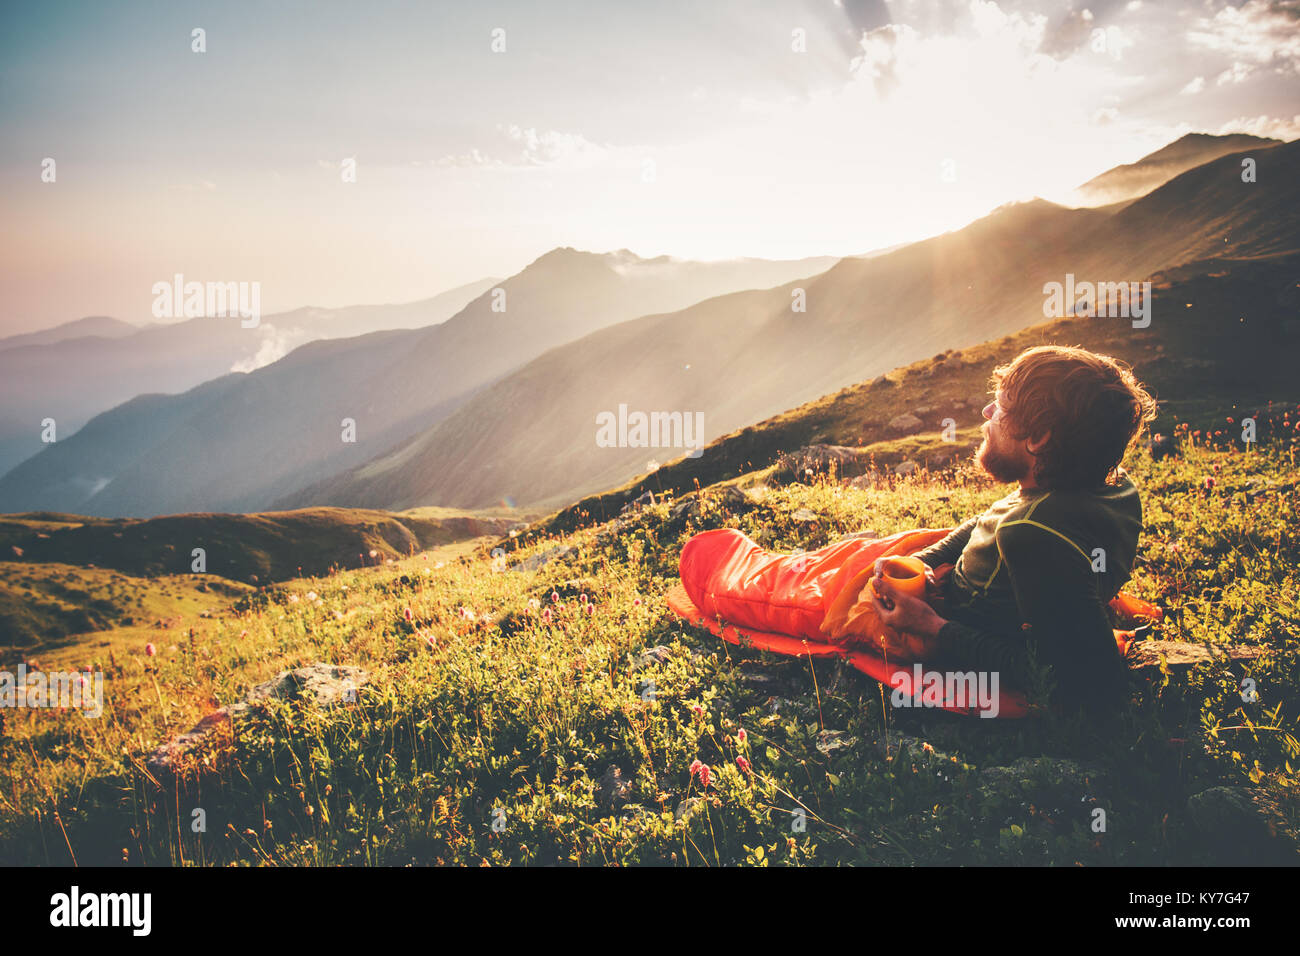 Man Relaxen im Schlafsack genießen Berge Sonnenuntergang Landschaft Reisen Lifestyle camping Konzept Abenteuer Sommer Urlaub Outdoor wandern mountainee Stockfoto